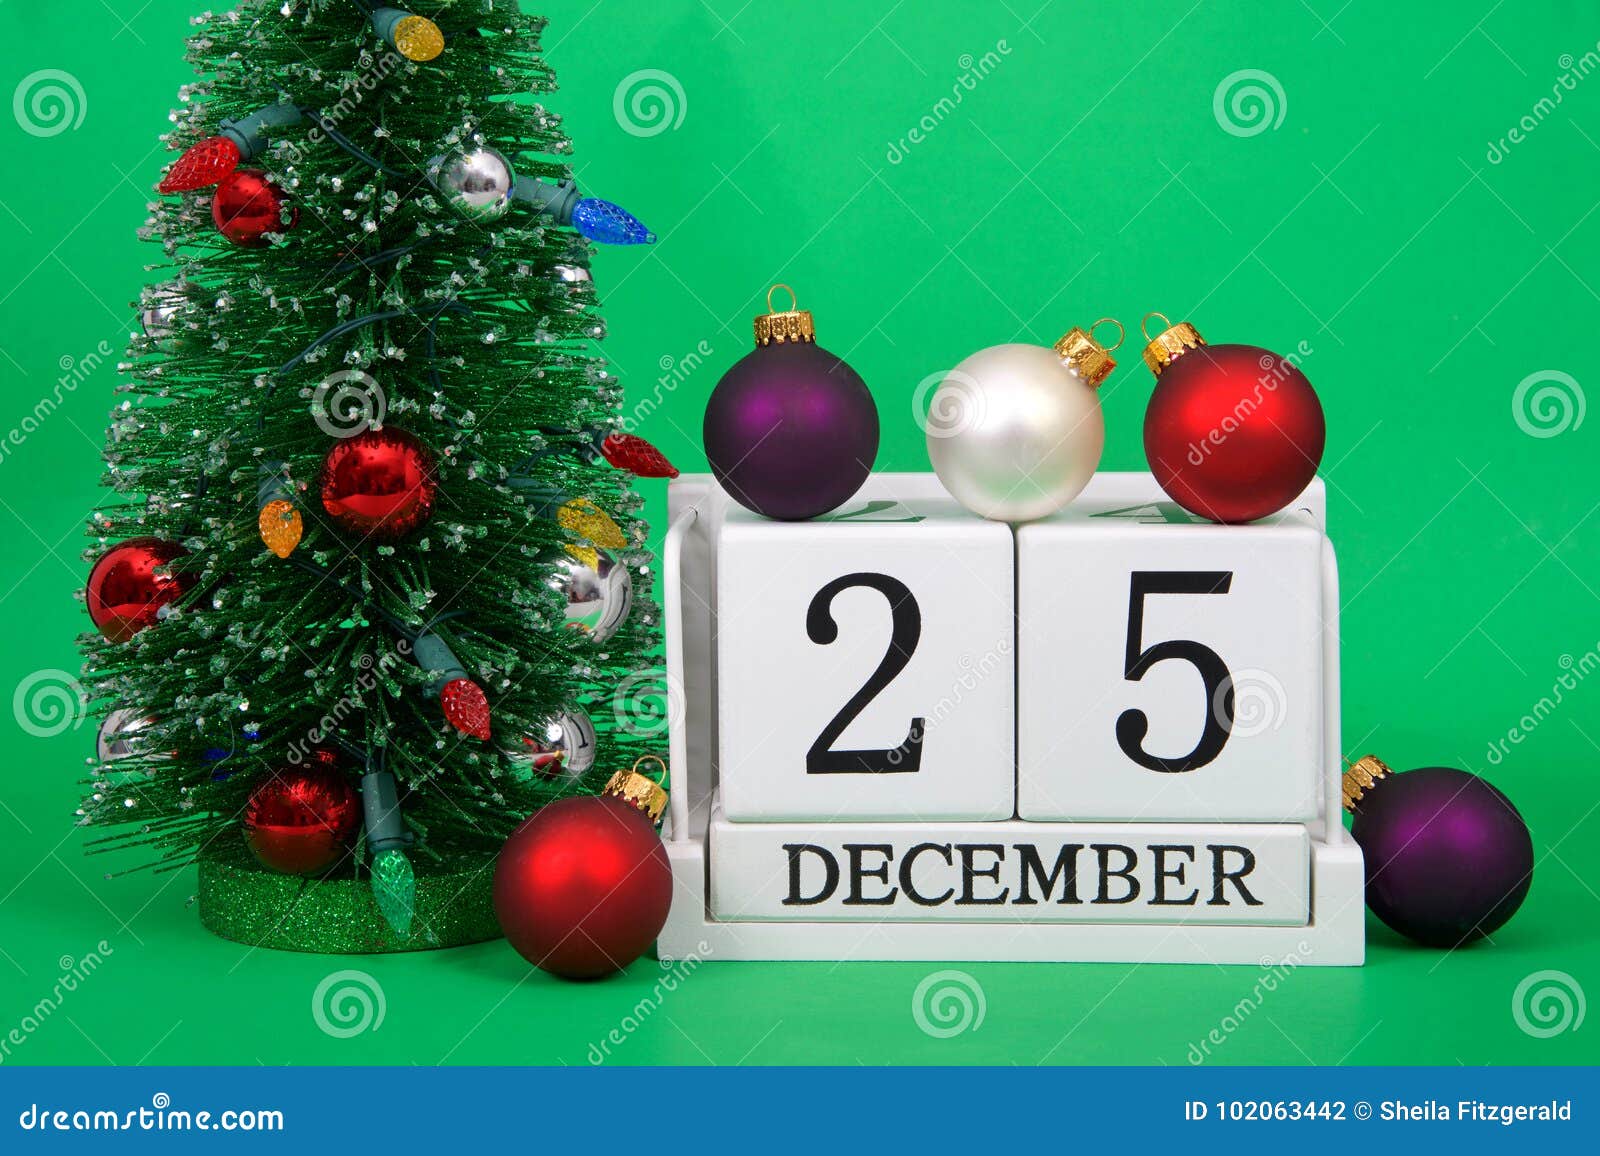 Data Del Natale.Chiuda Su Dei Blocchi Di Legno Con Data Il Natale Del 25 Dicembre Fotografia Stock Immagine Di Evento Giorno 102063442